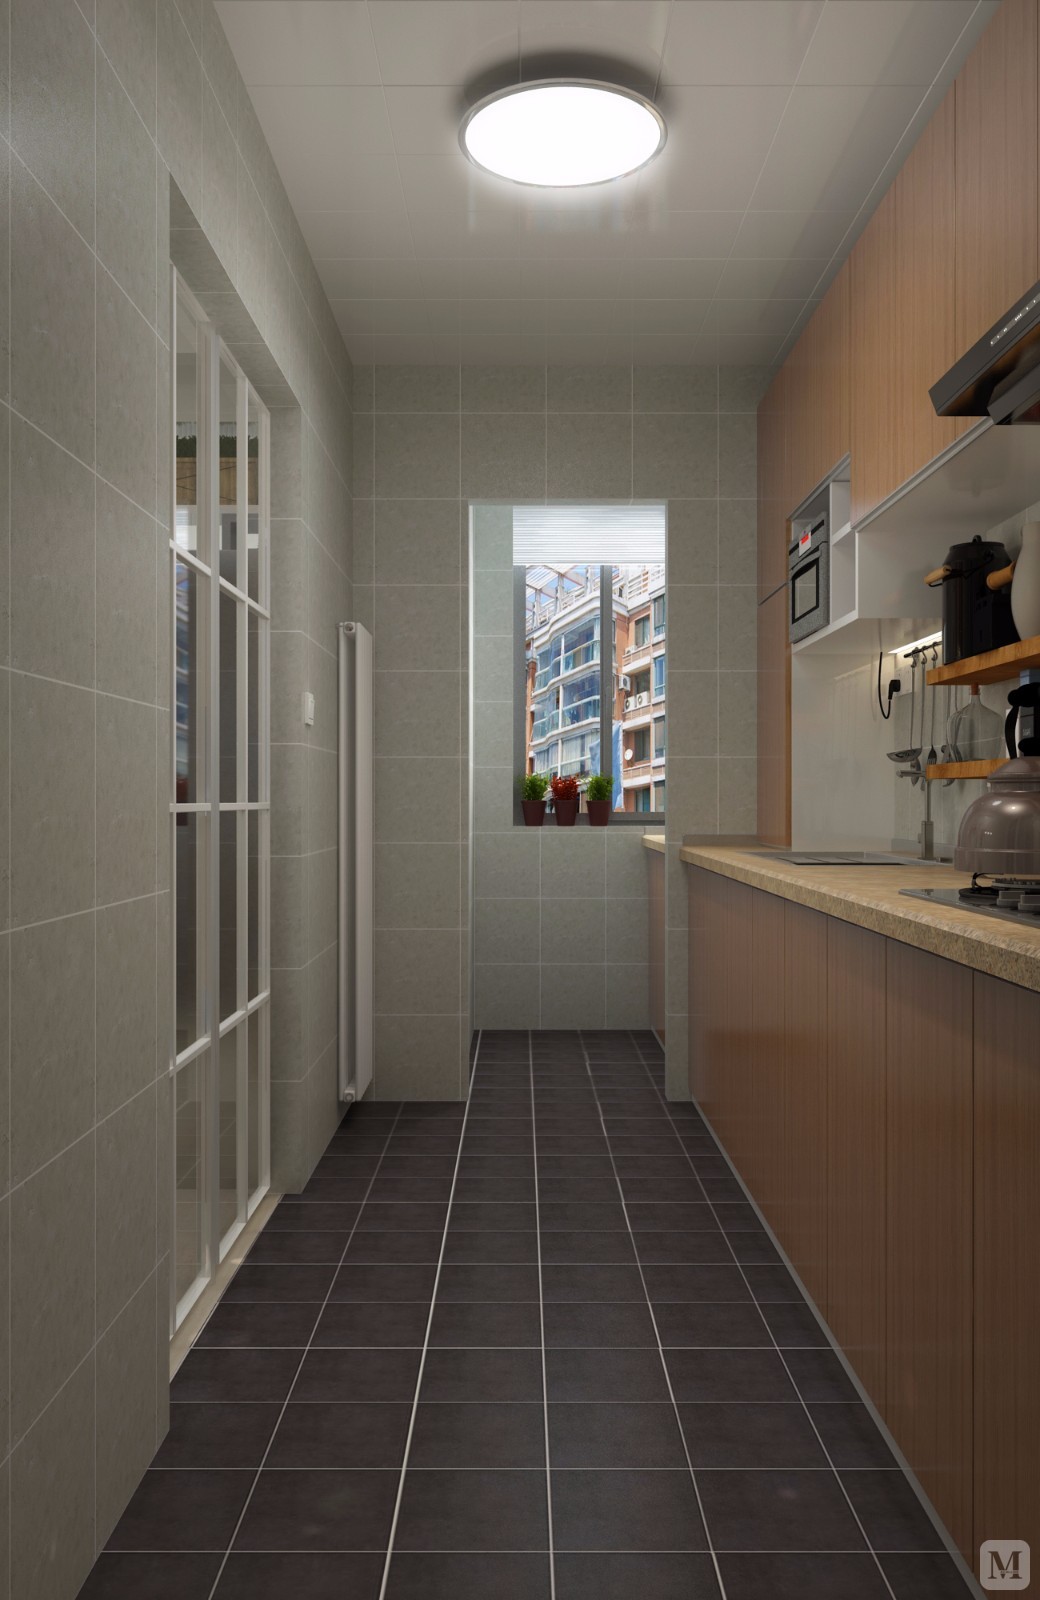 厨房简单明了，色调简洁大方。厨房与阳台相通，增大空间感，增强光线通透度。